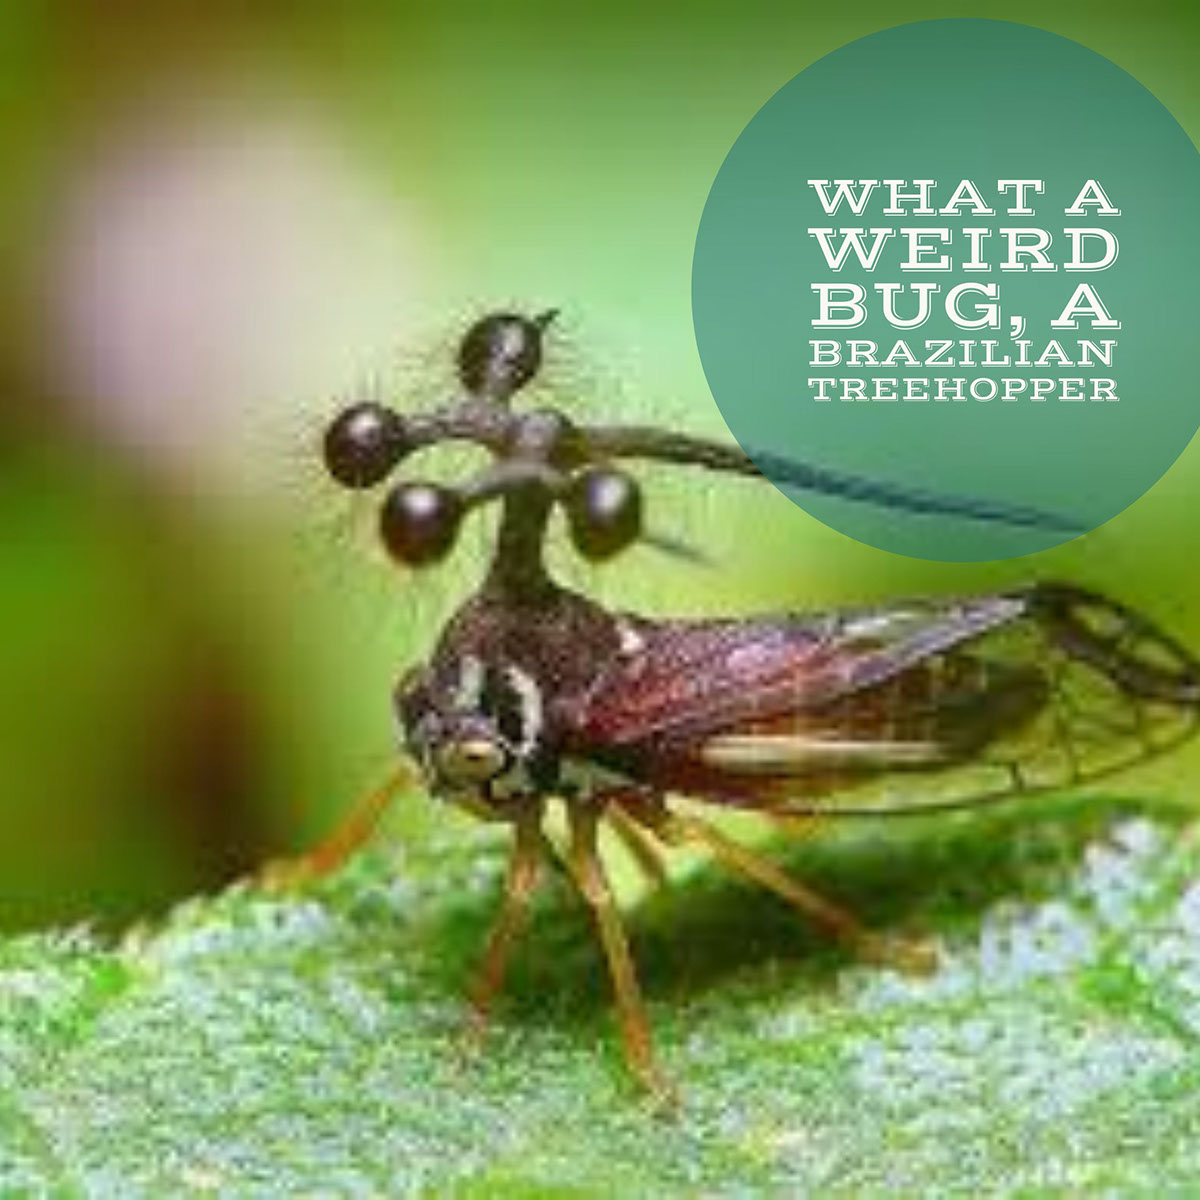 What a weird bug, a Brazilian Treehopper